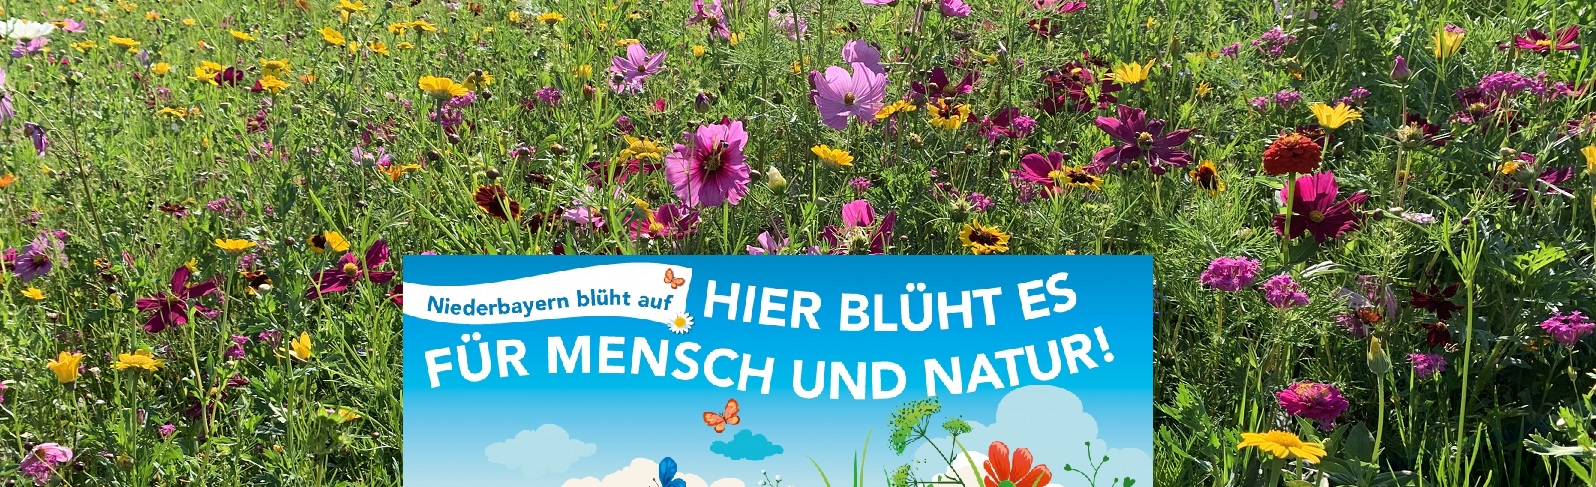 Thema Blumenmischung Niederbayern blht auf